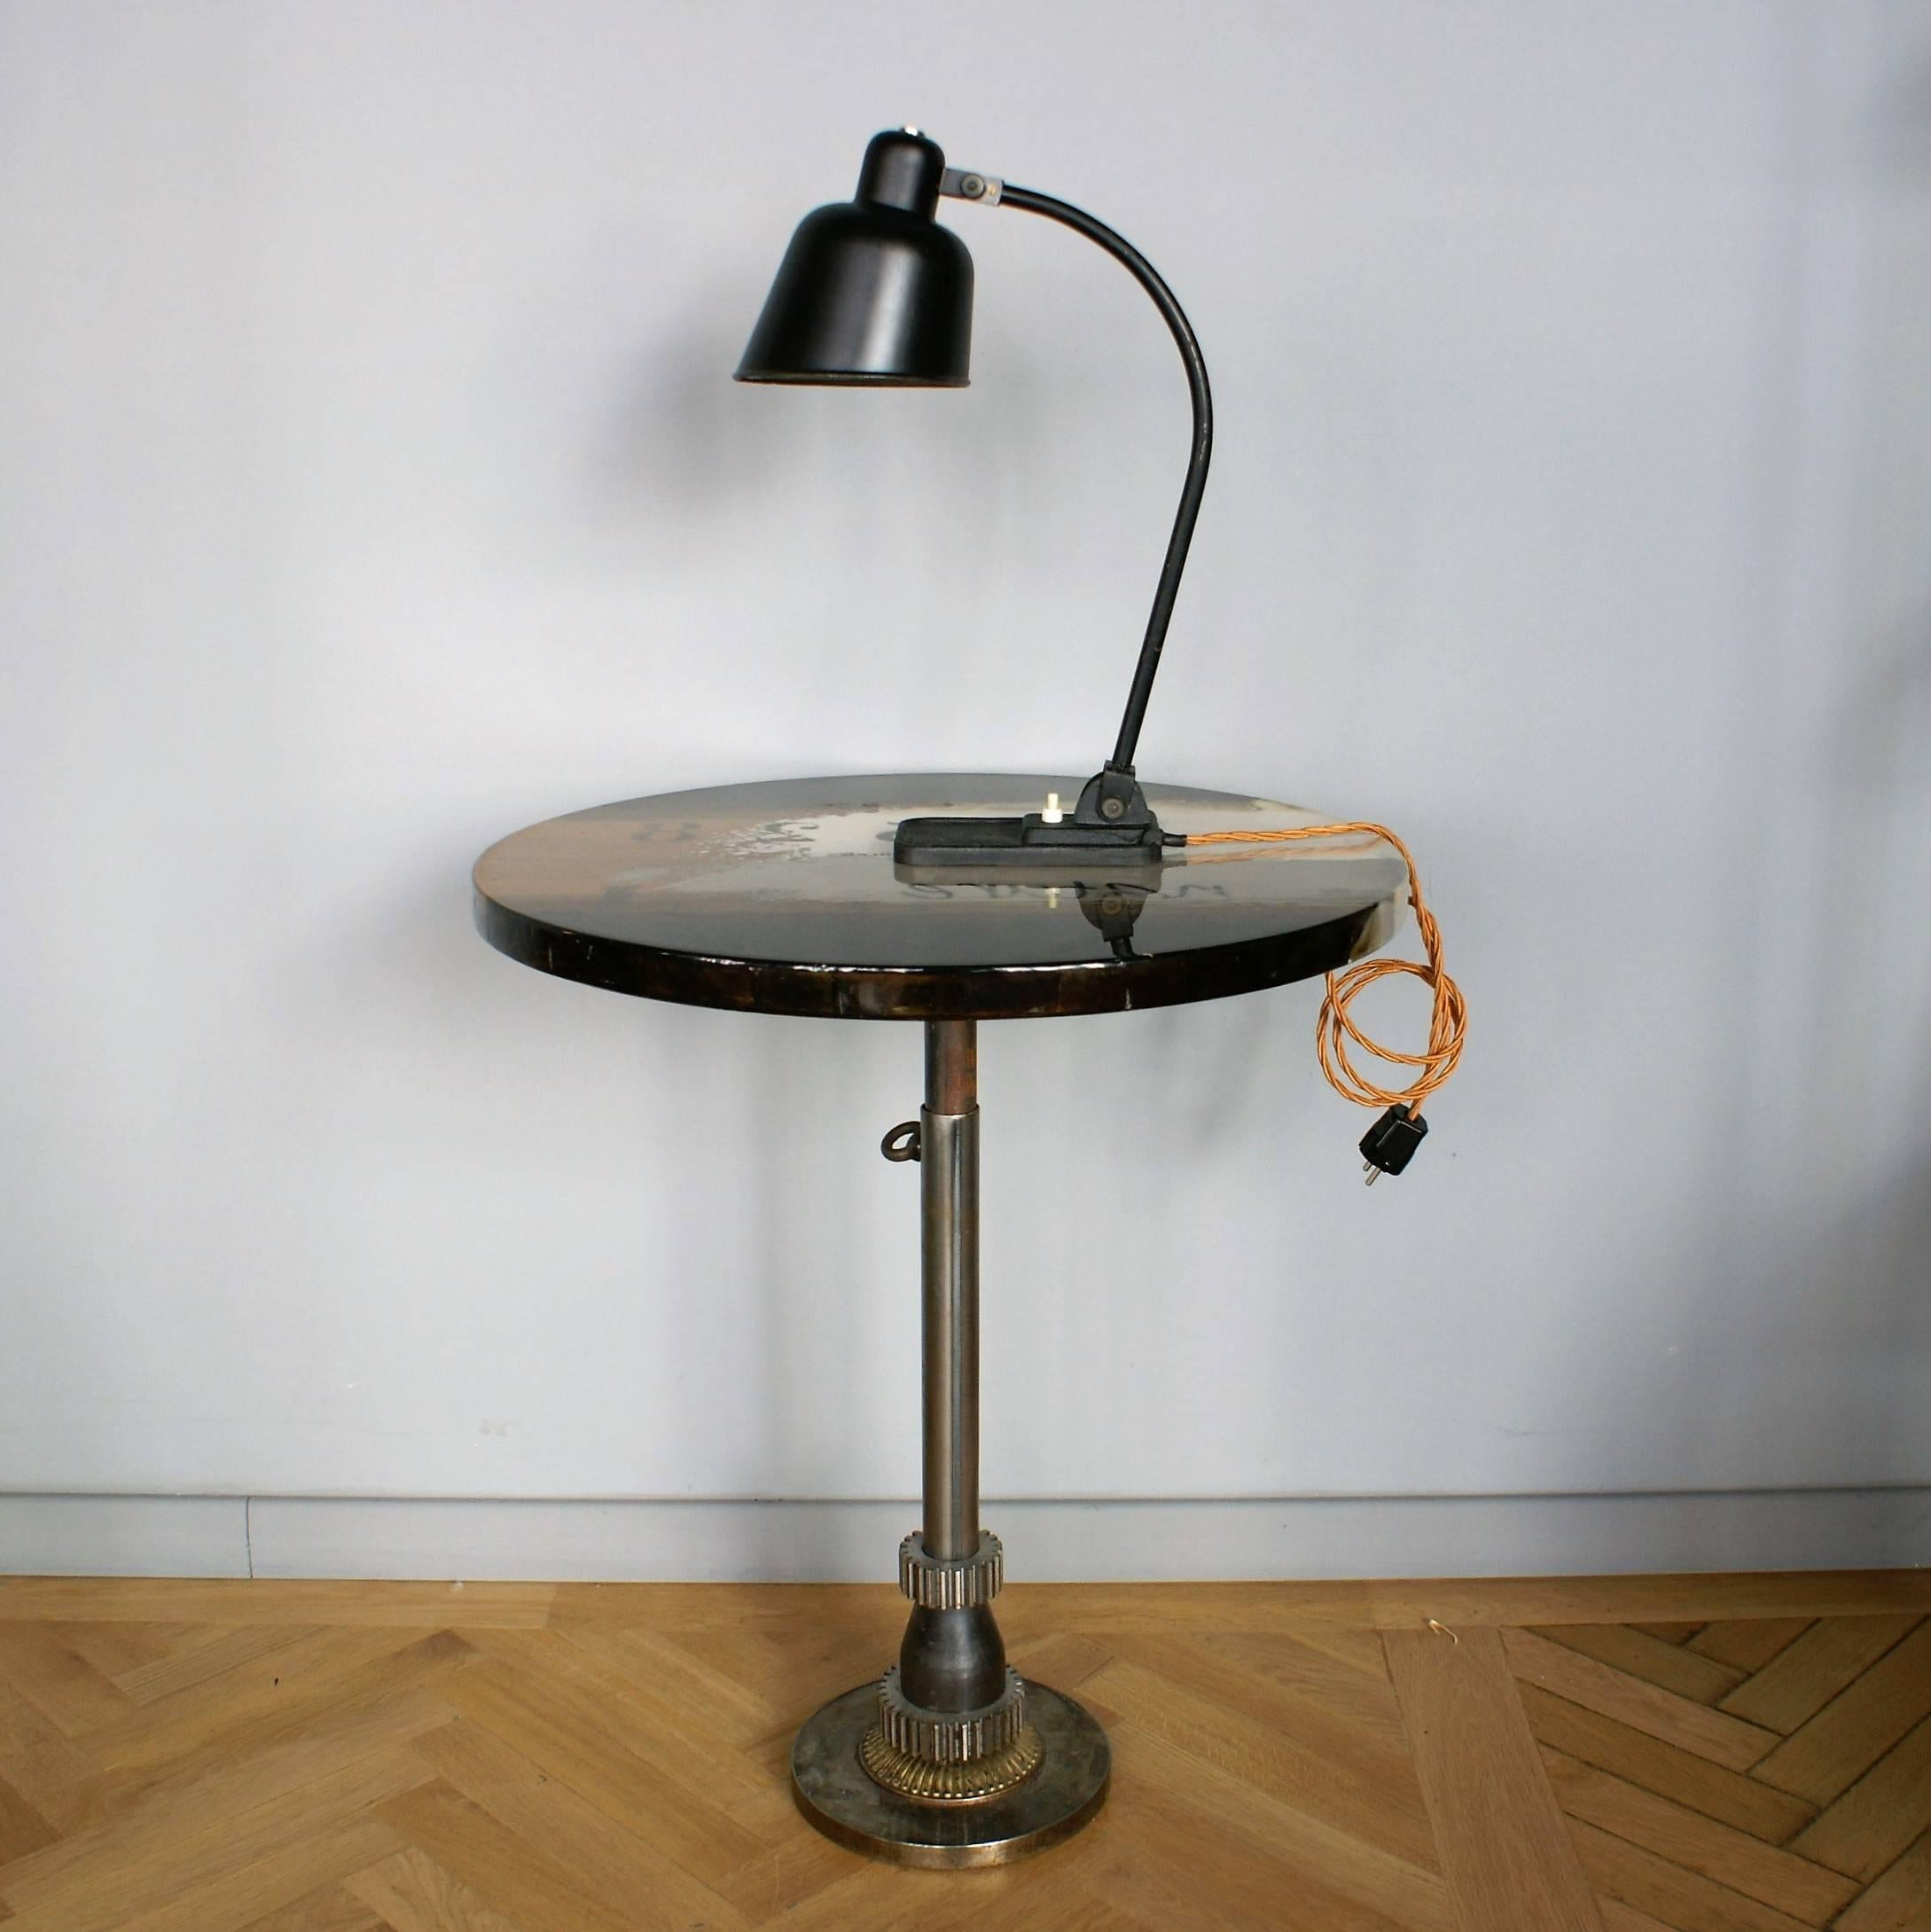 Ikonische Bauhaus-Schreibtischlampe von Christian Dell im Originalzustand.
Verstellbarer, gewölbter Stahlrohrstiel und verstellbarer, schwarz lackierter Lampenschirm aus Aluminium.

Das Staatliche Bauhaus, gemeinhin einfach Bauhaus genannt, wurde